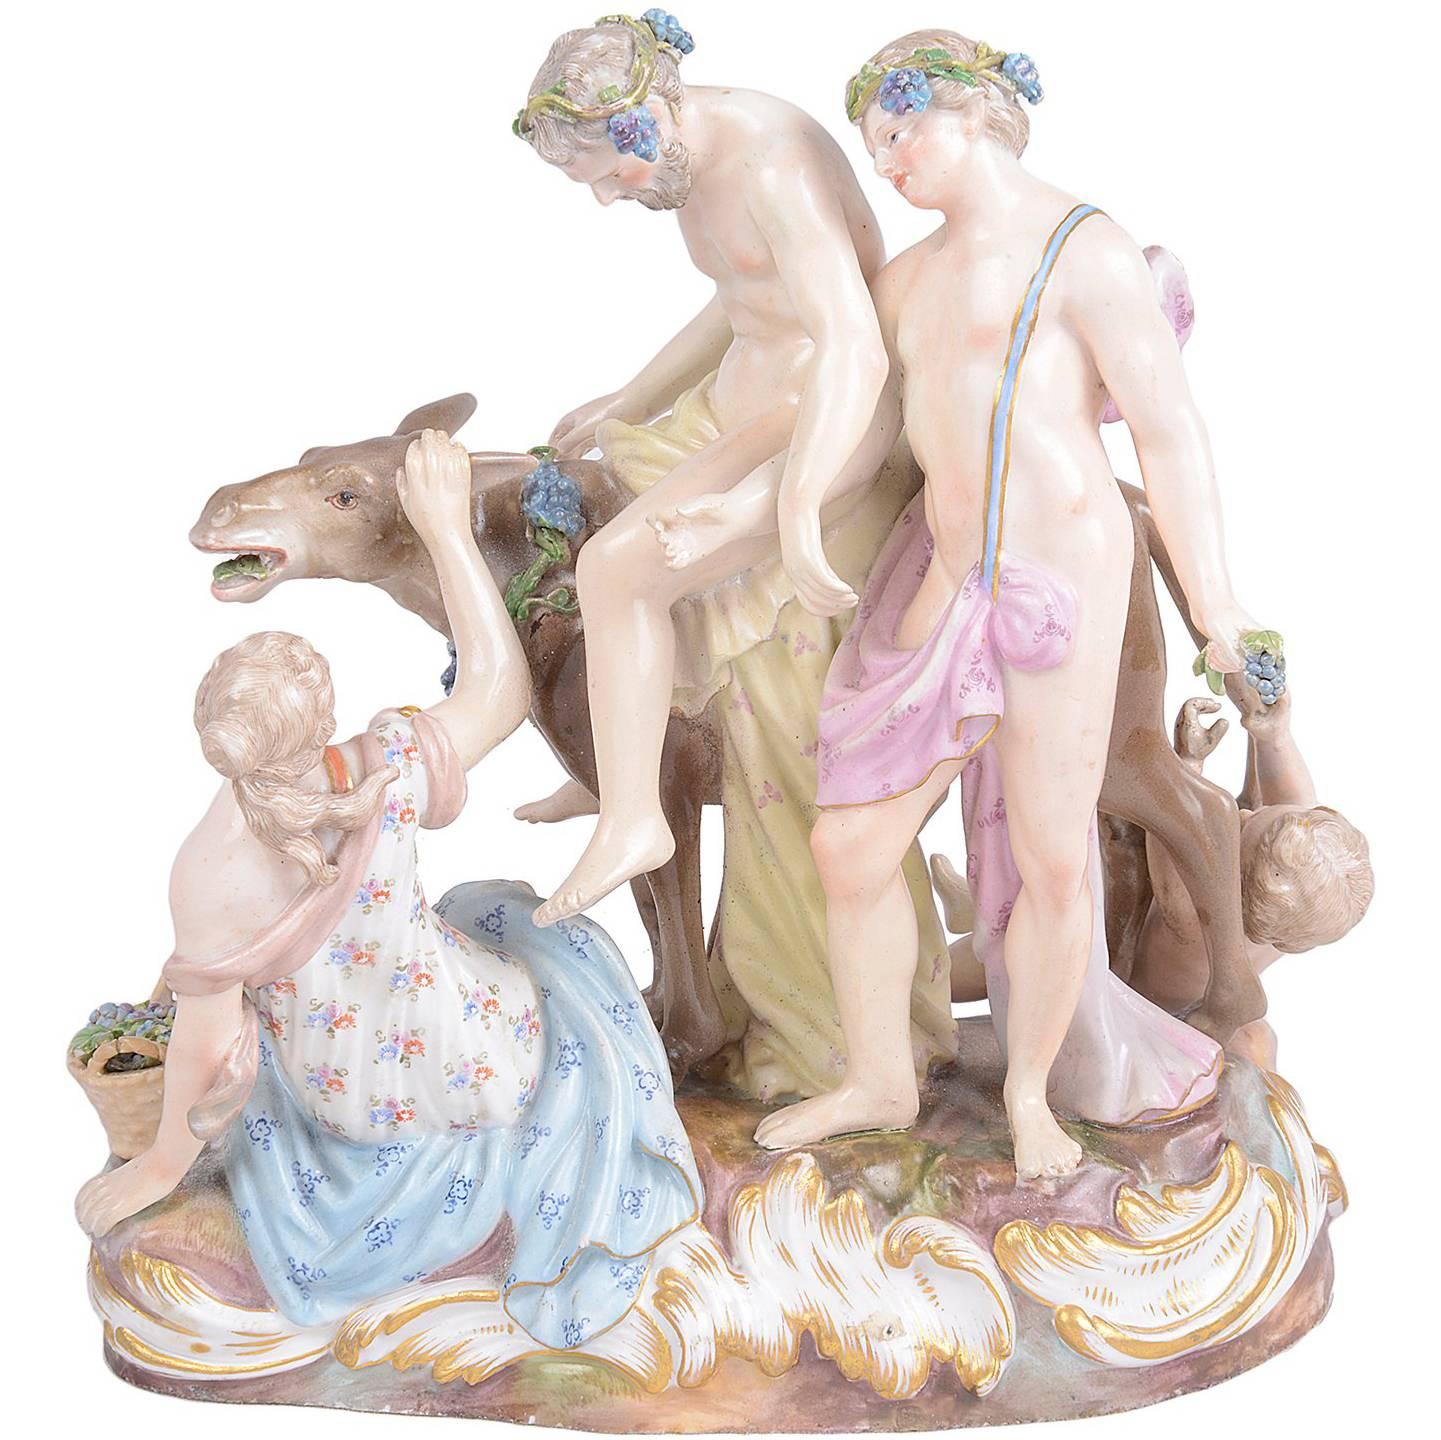 Meissener Porzellanfigurengruppe des Drunken Silenus aus dem 19. Jahrhundert